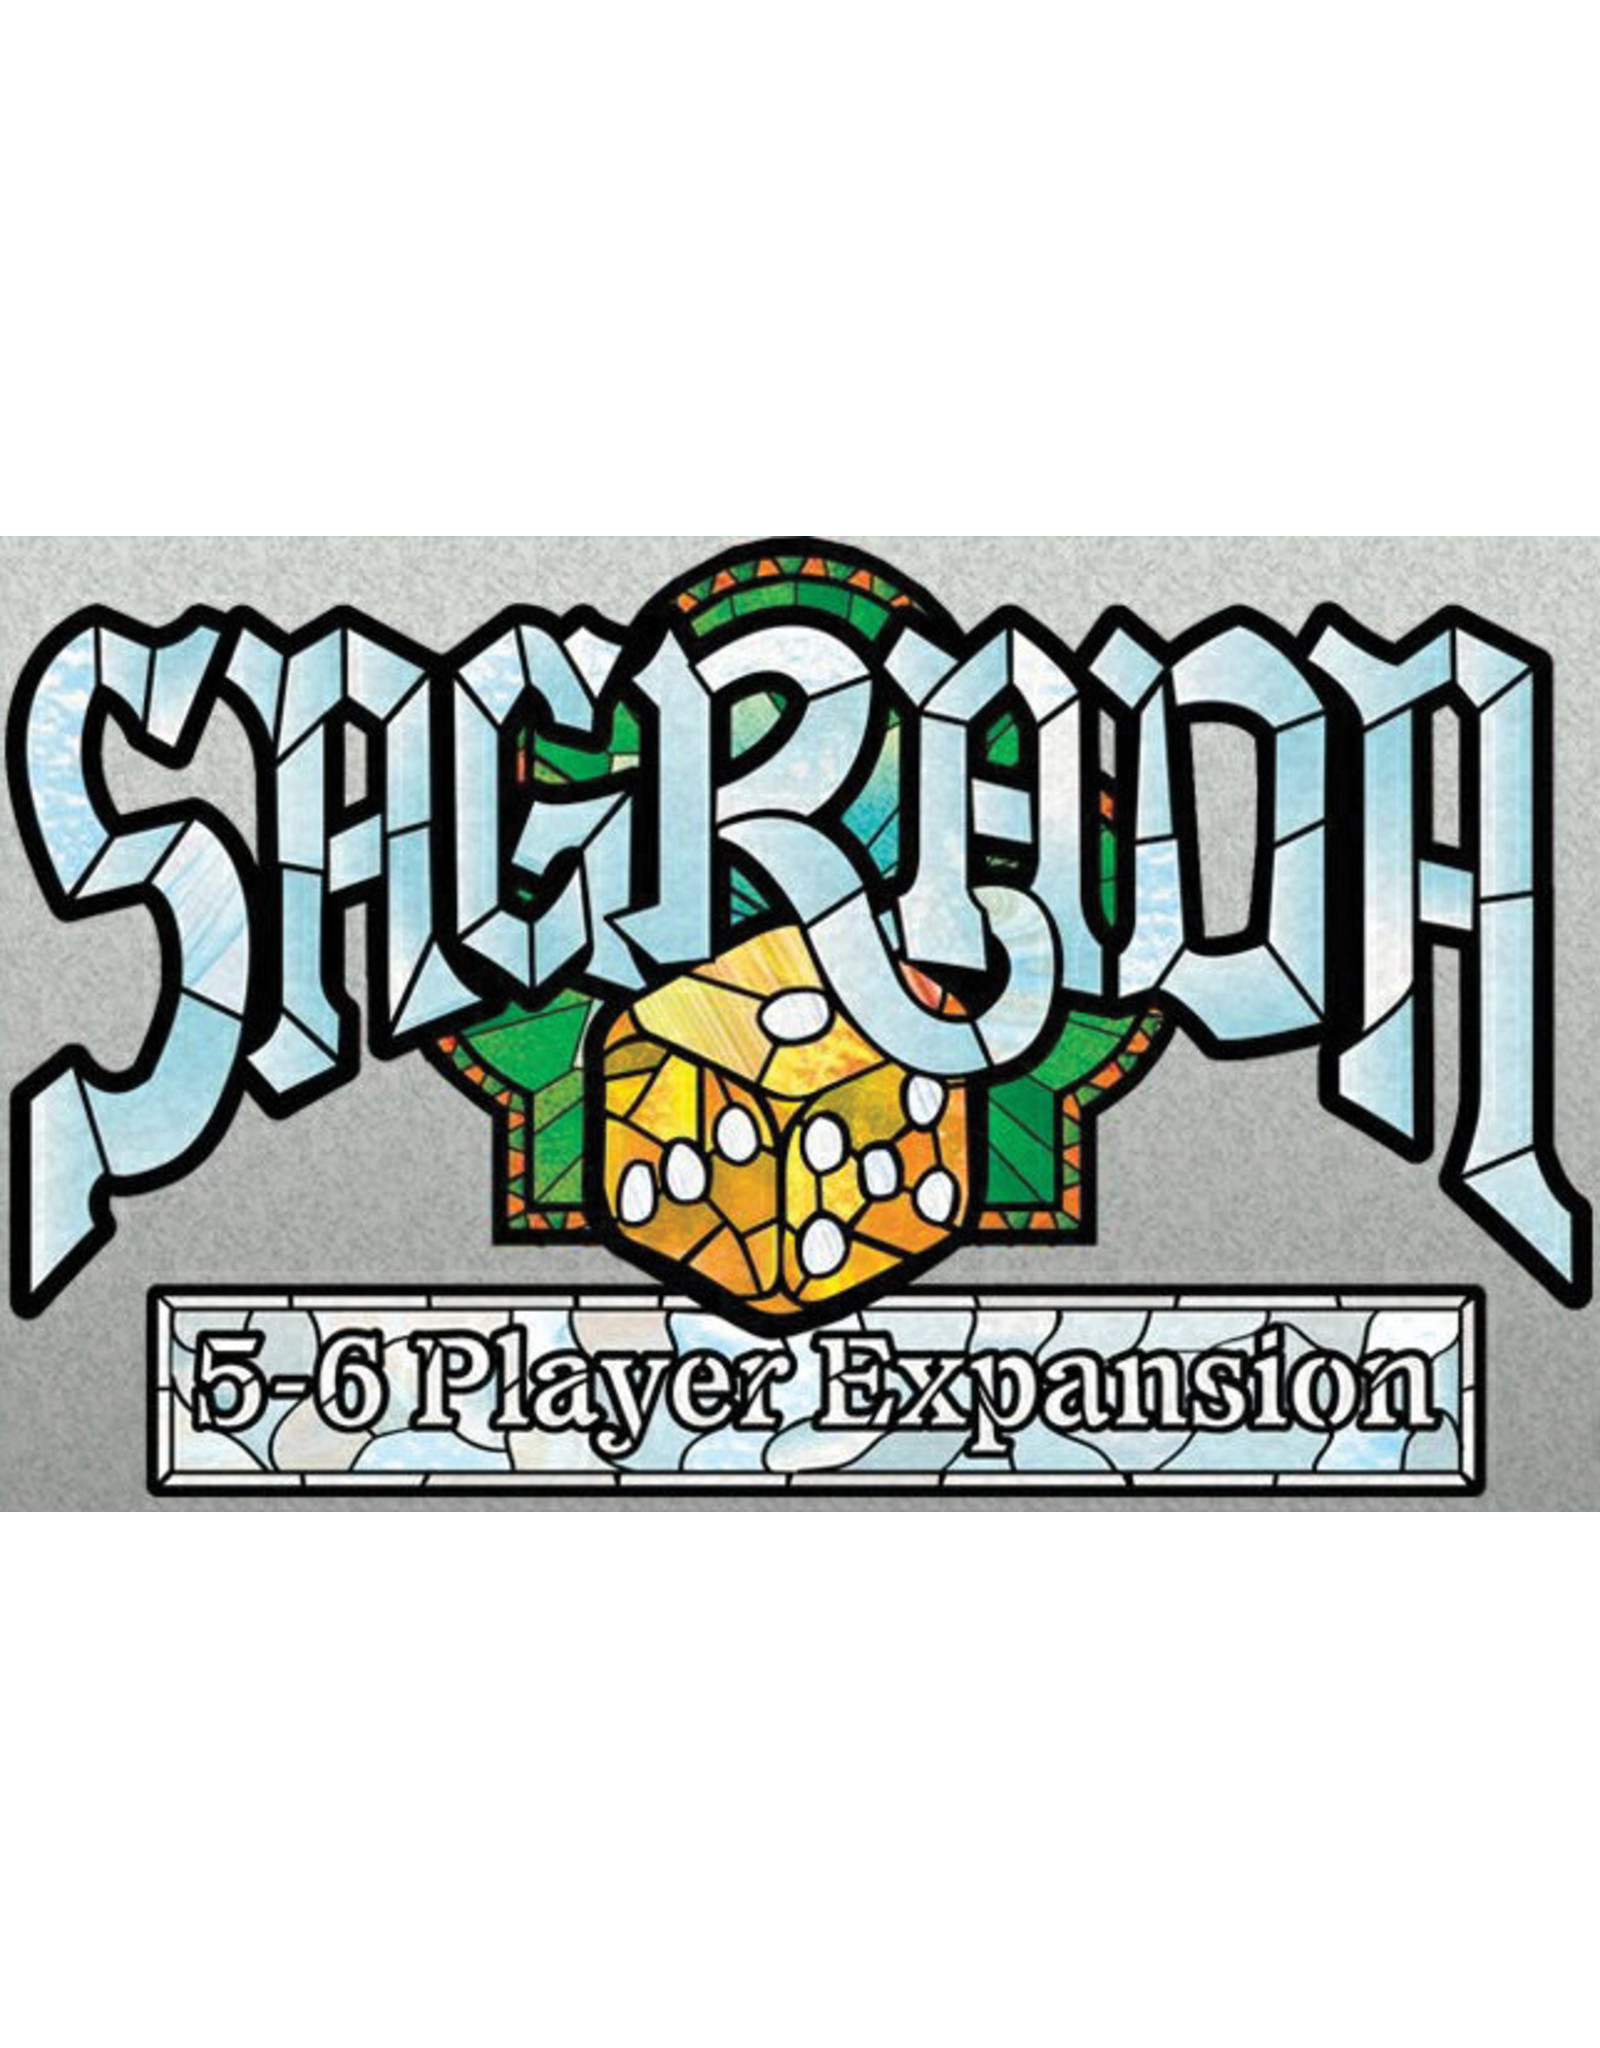 Sagrada 5-6 Player